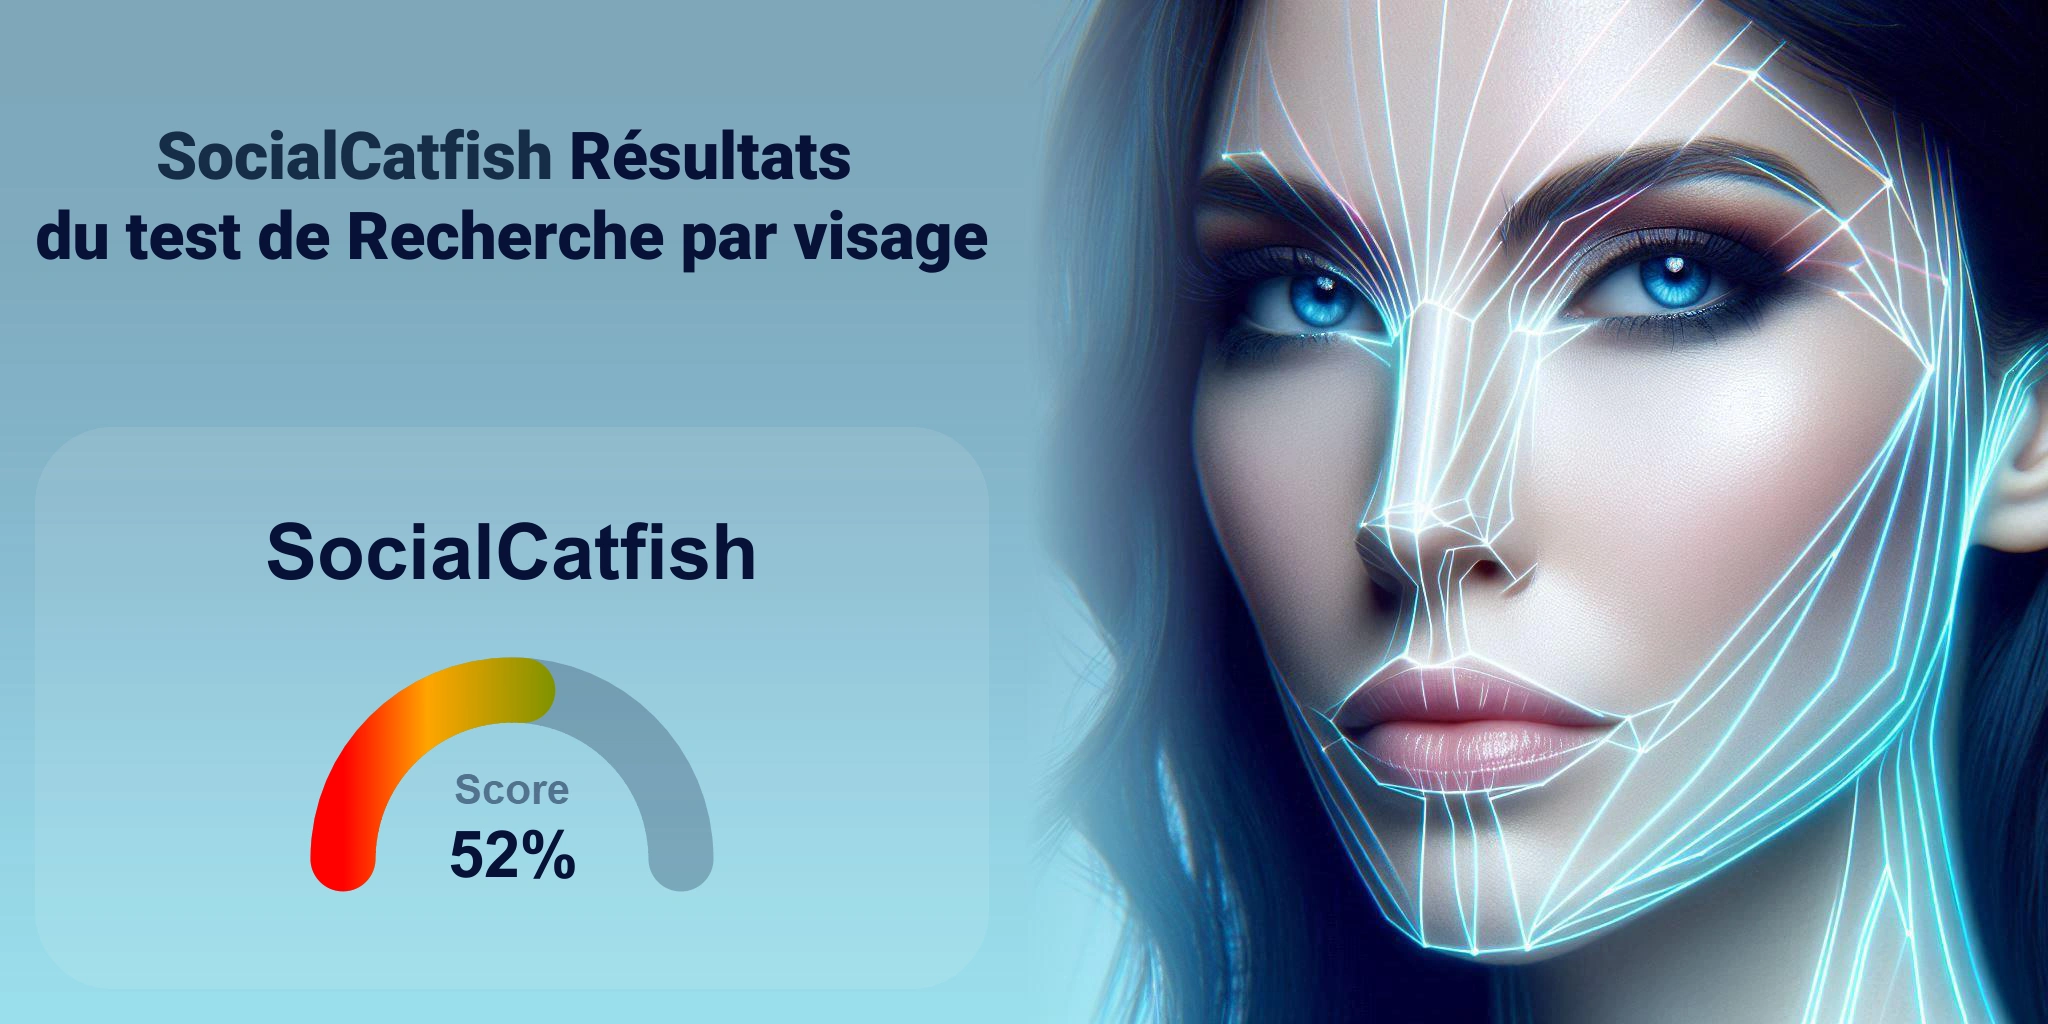 SocialCatfish est-il le meilleur pour la recherche faciale ?